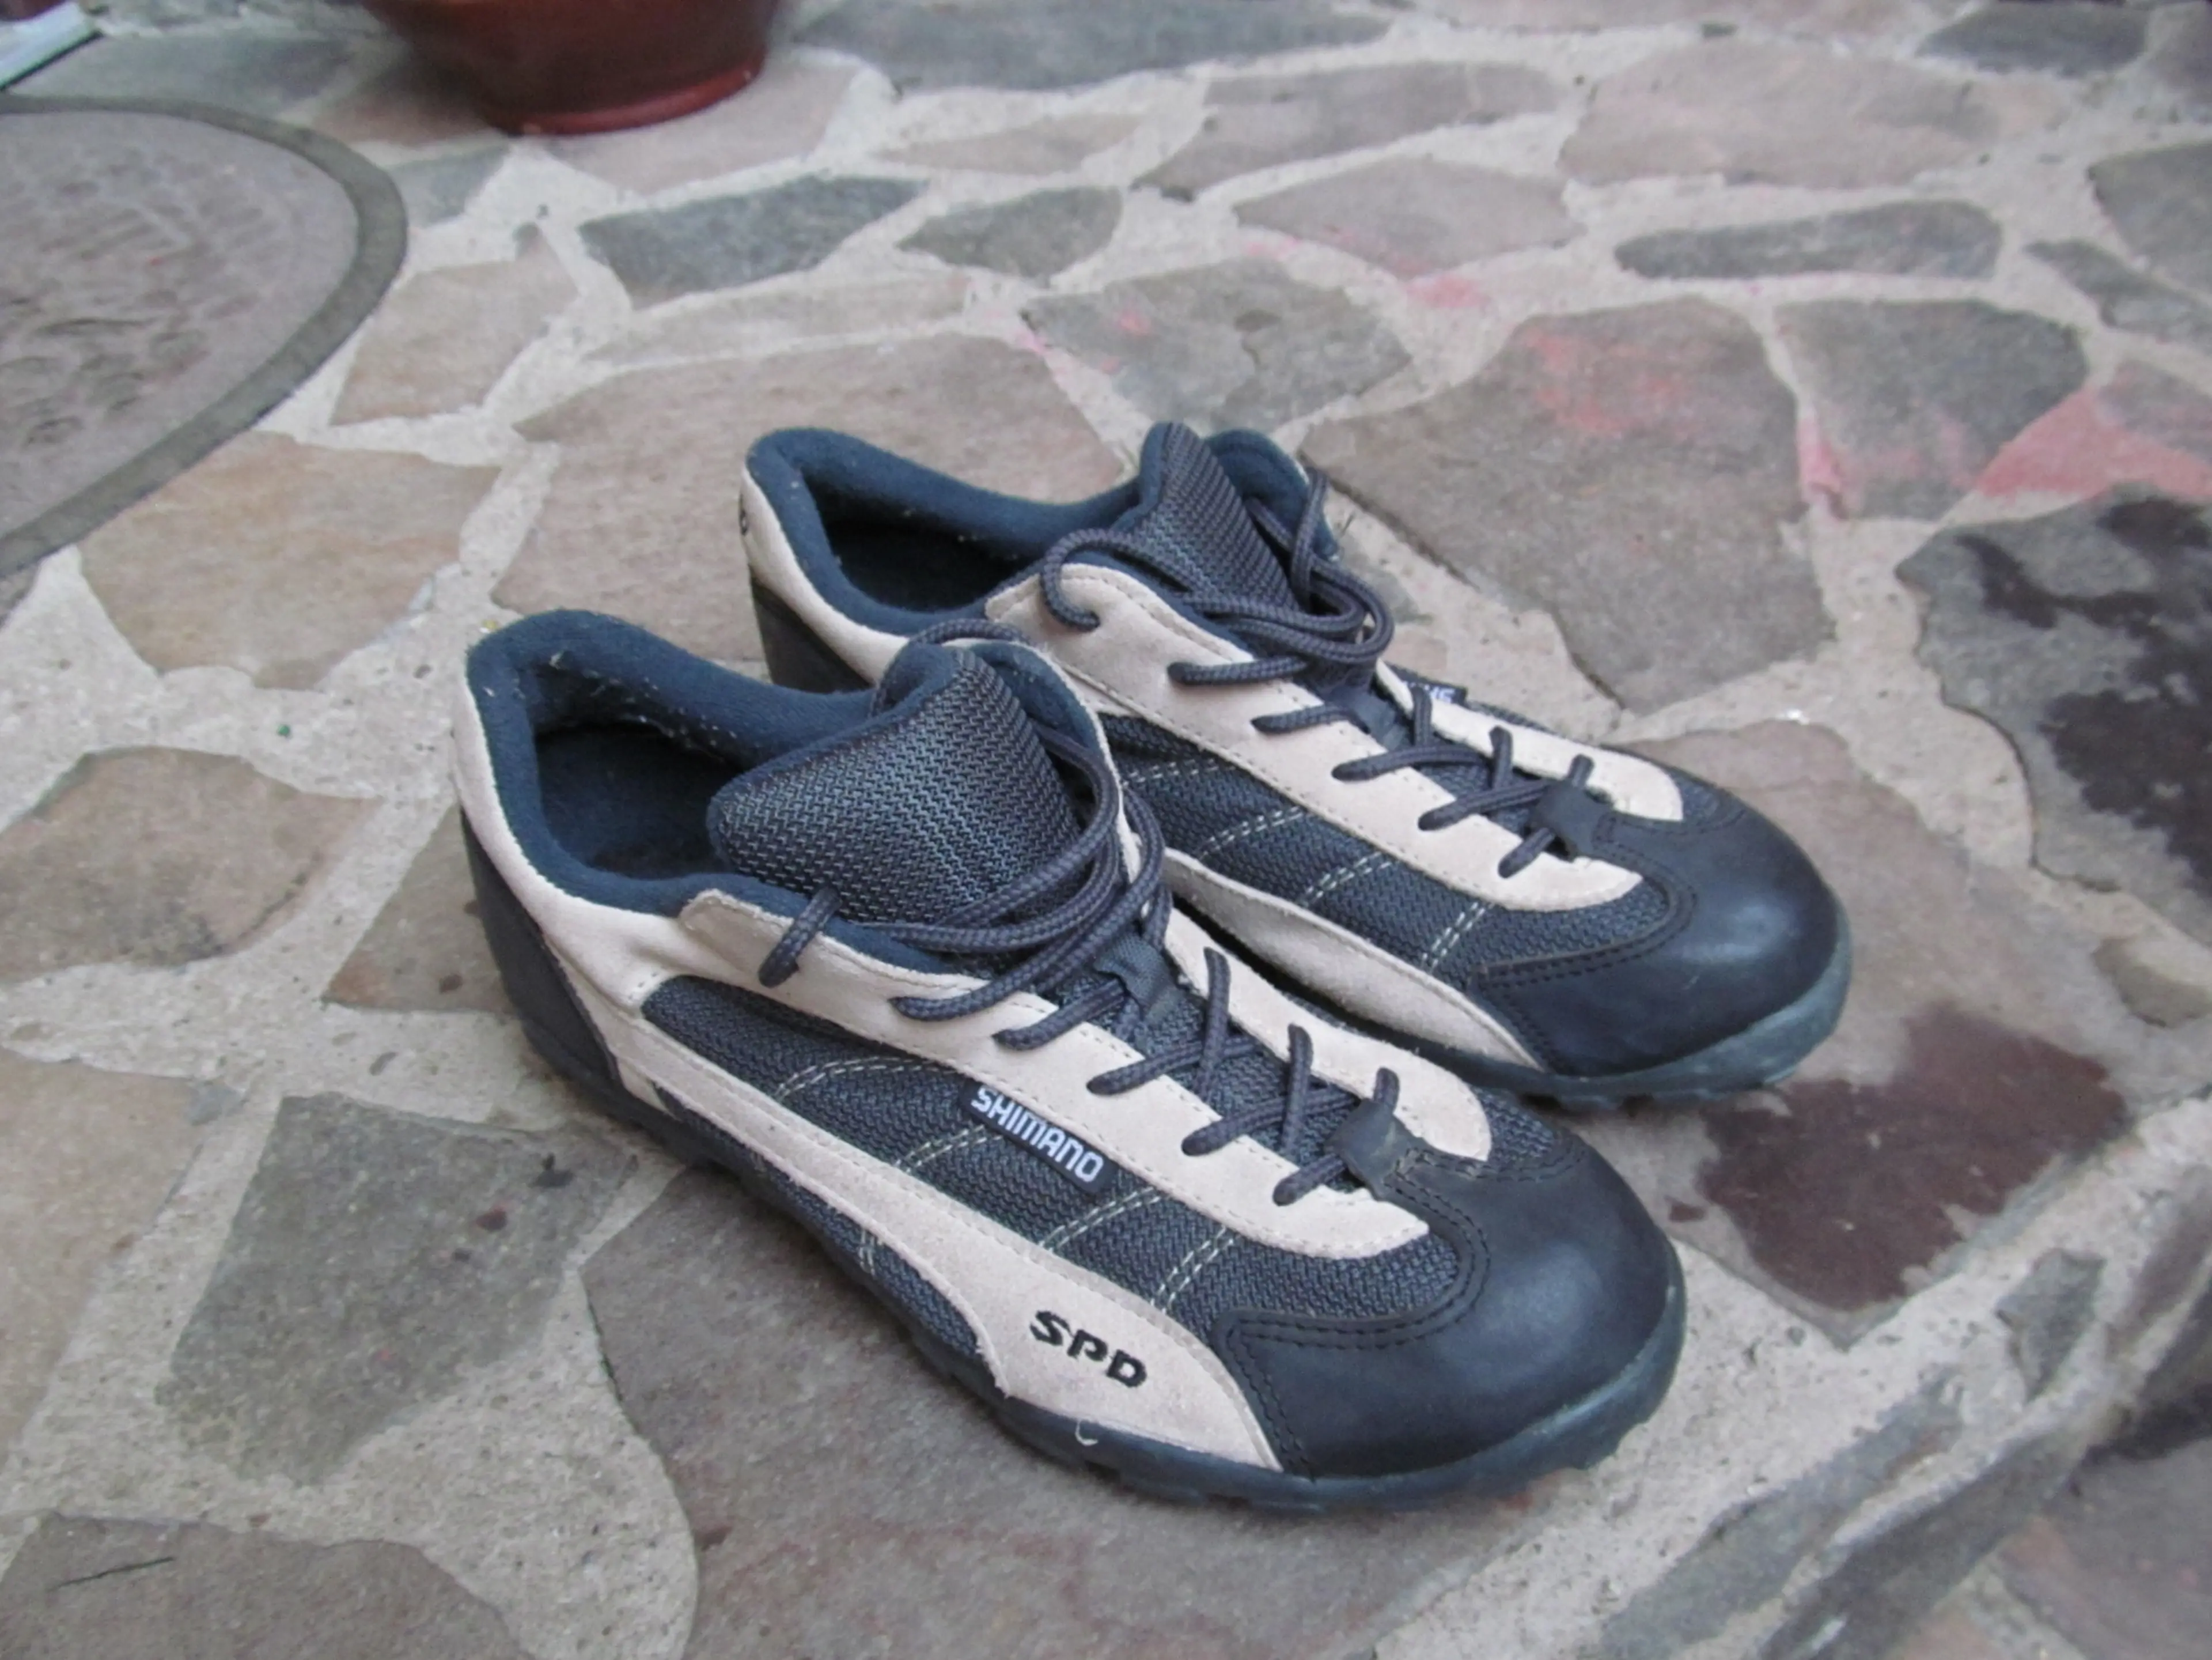 2. Pantofi Shimano SH-M020 nr 40, 25 cm